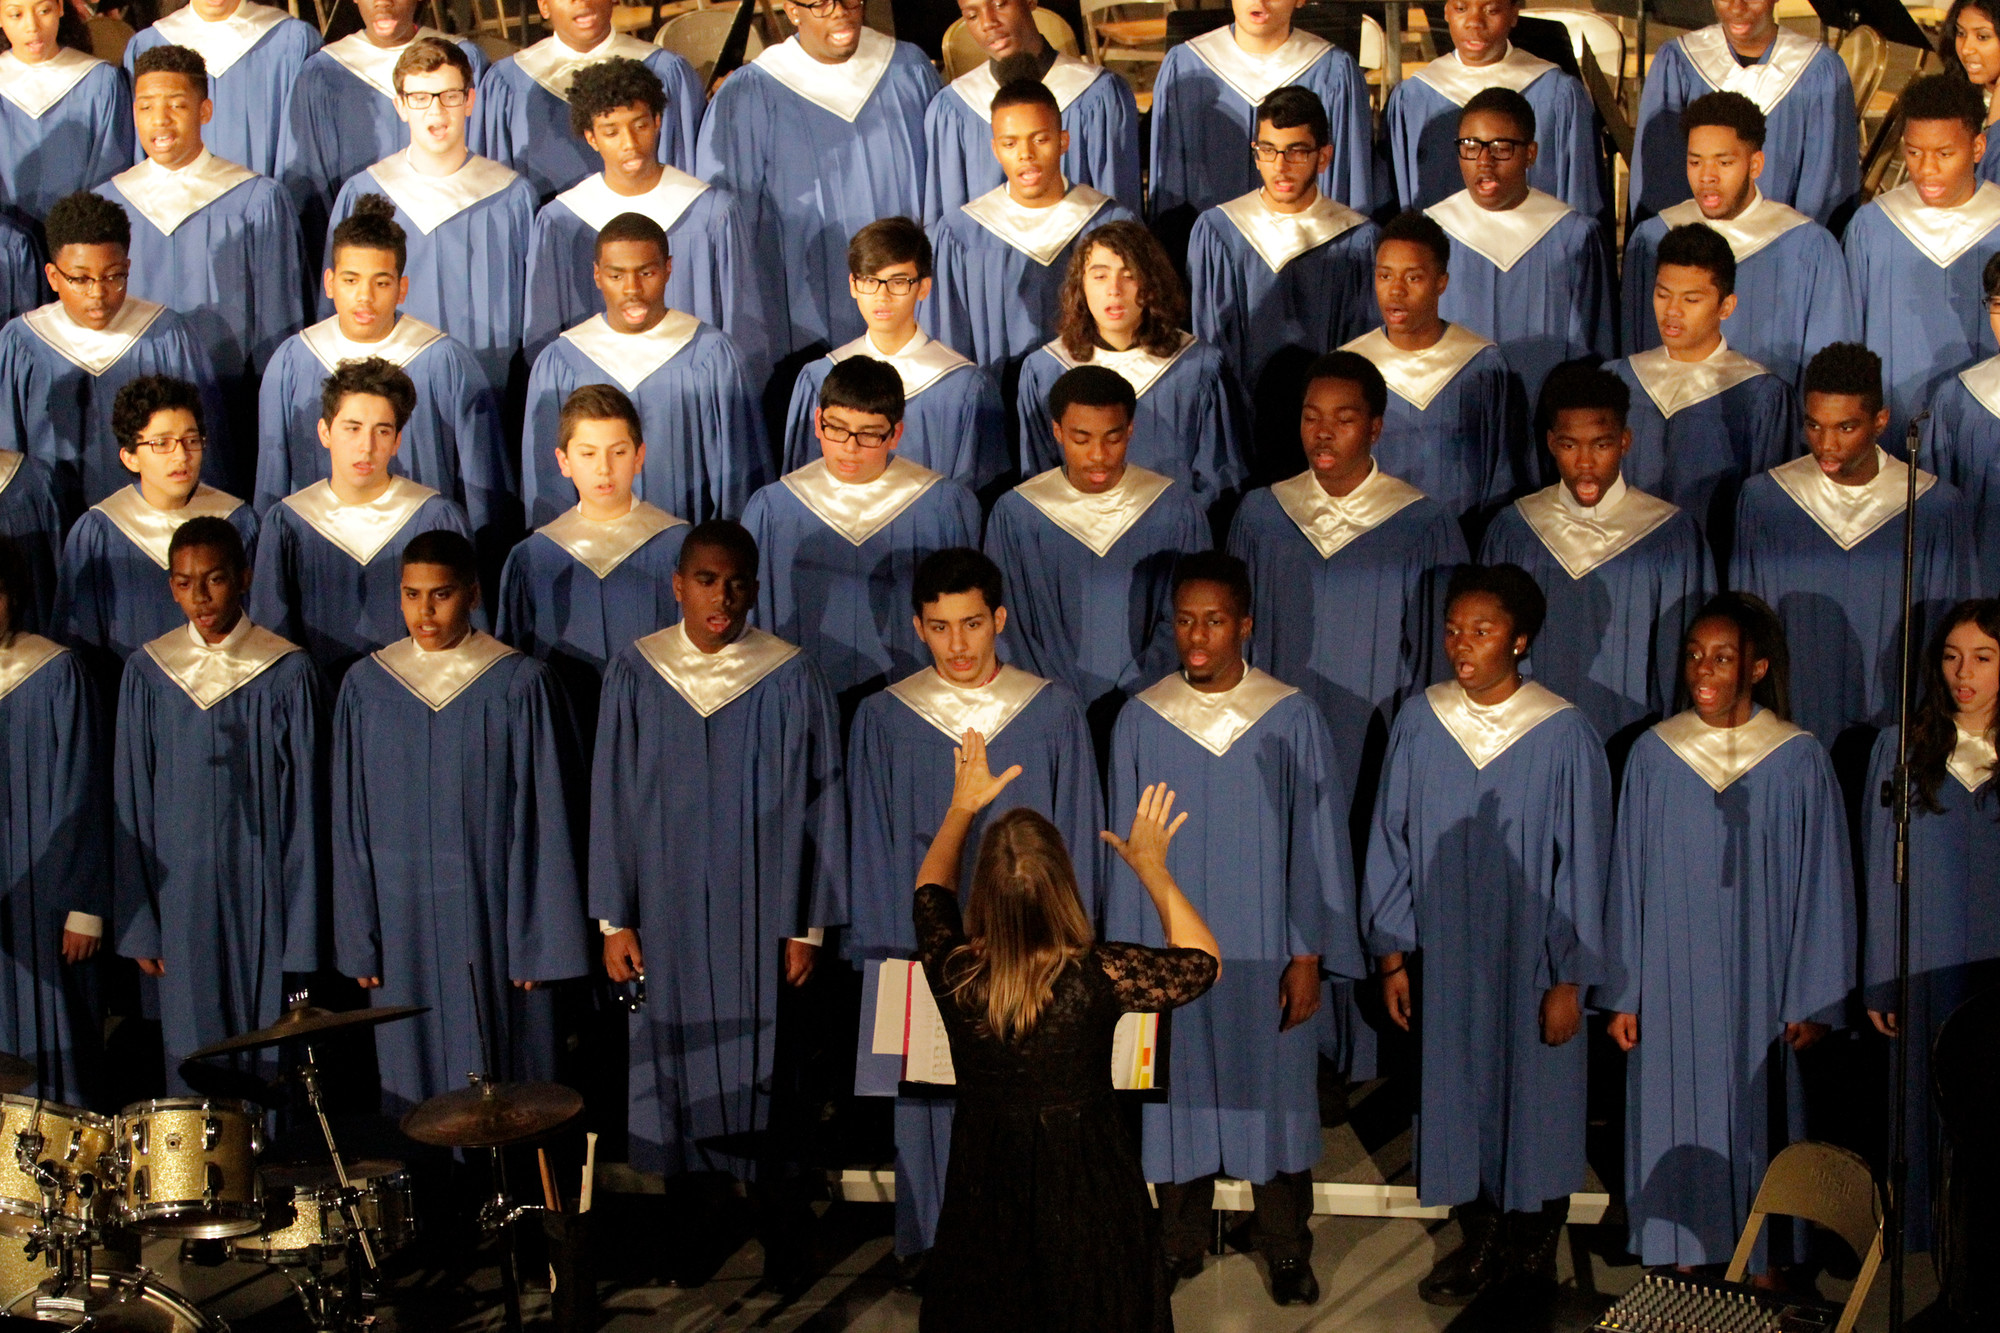 The chorus performed several seasonal songs.